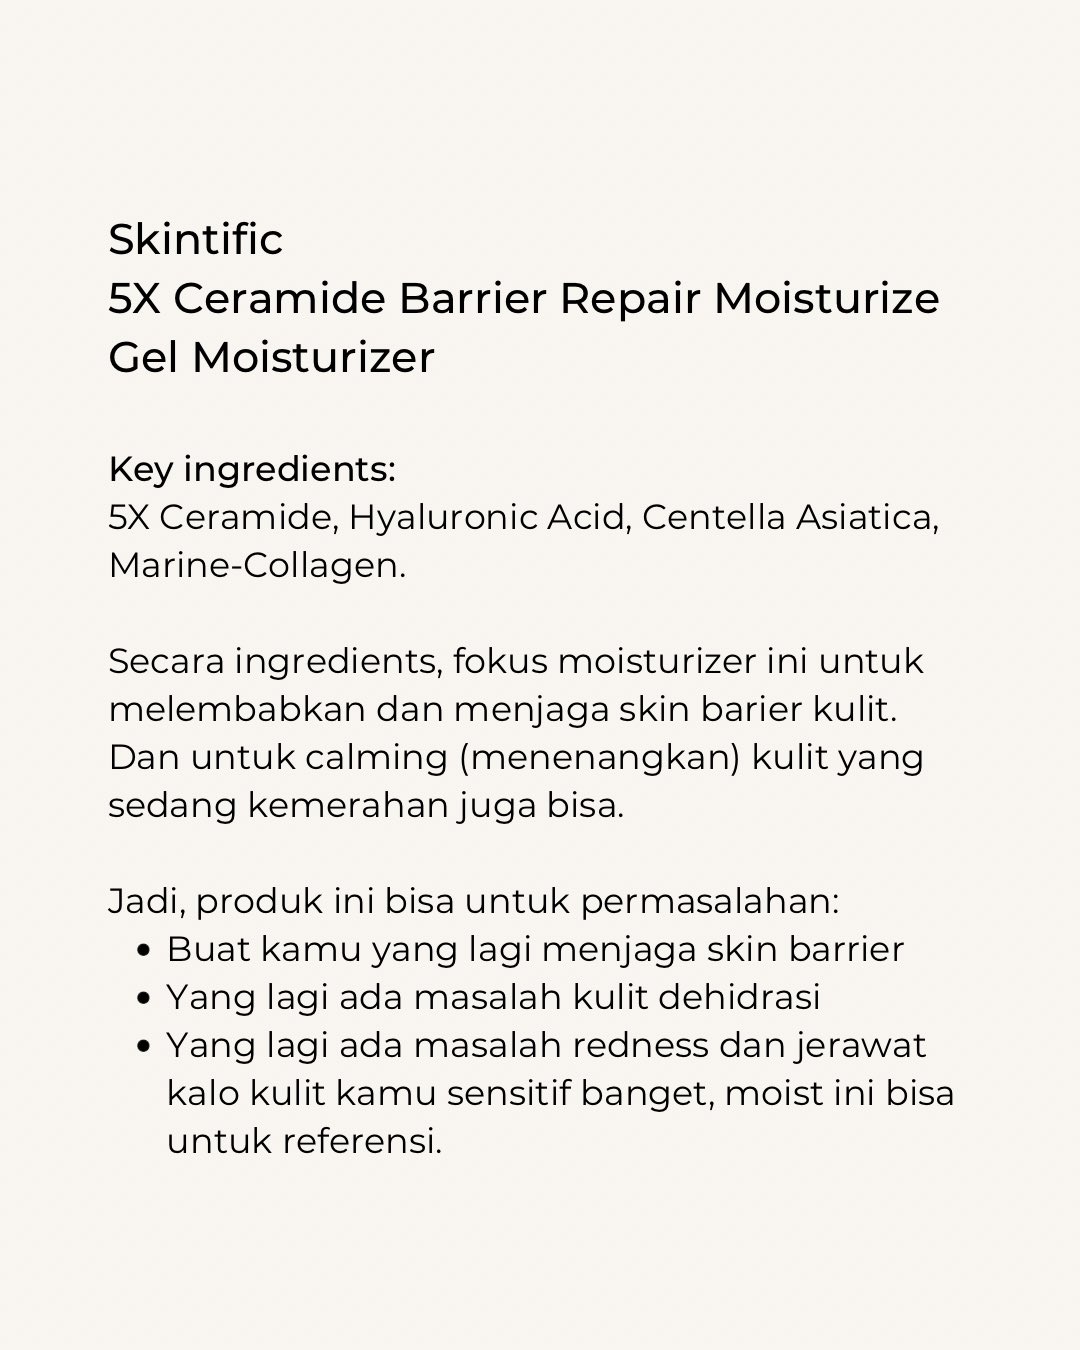 Skintific moisturizer ingredients